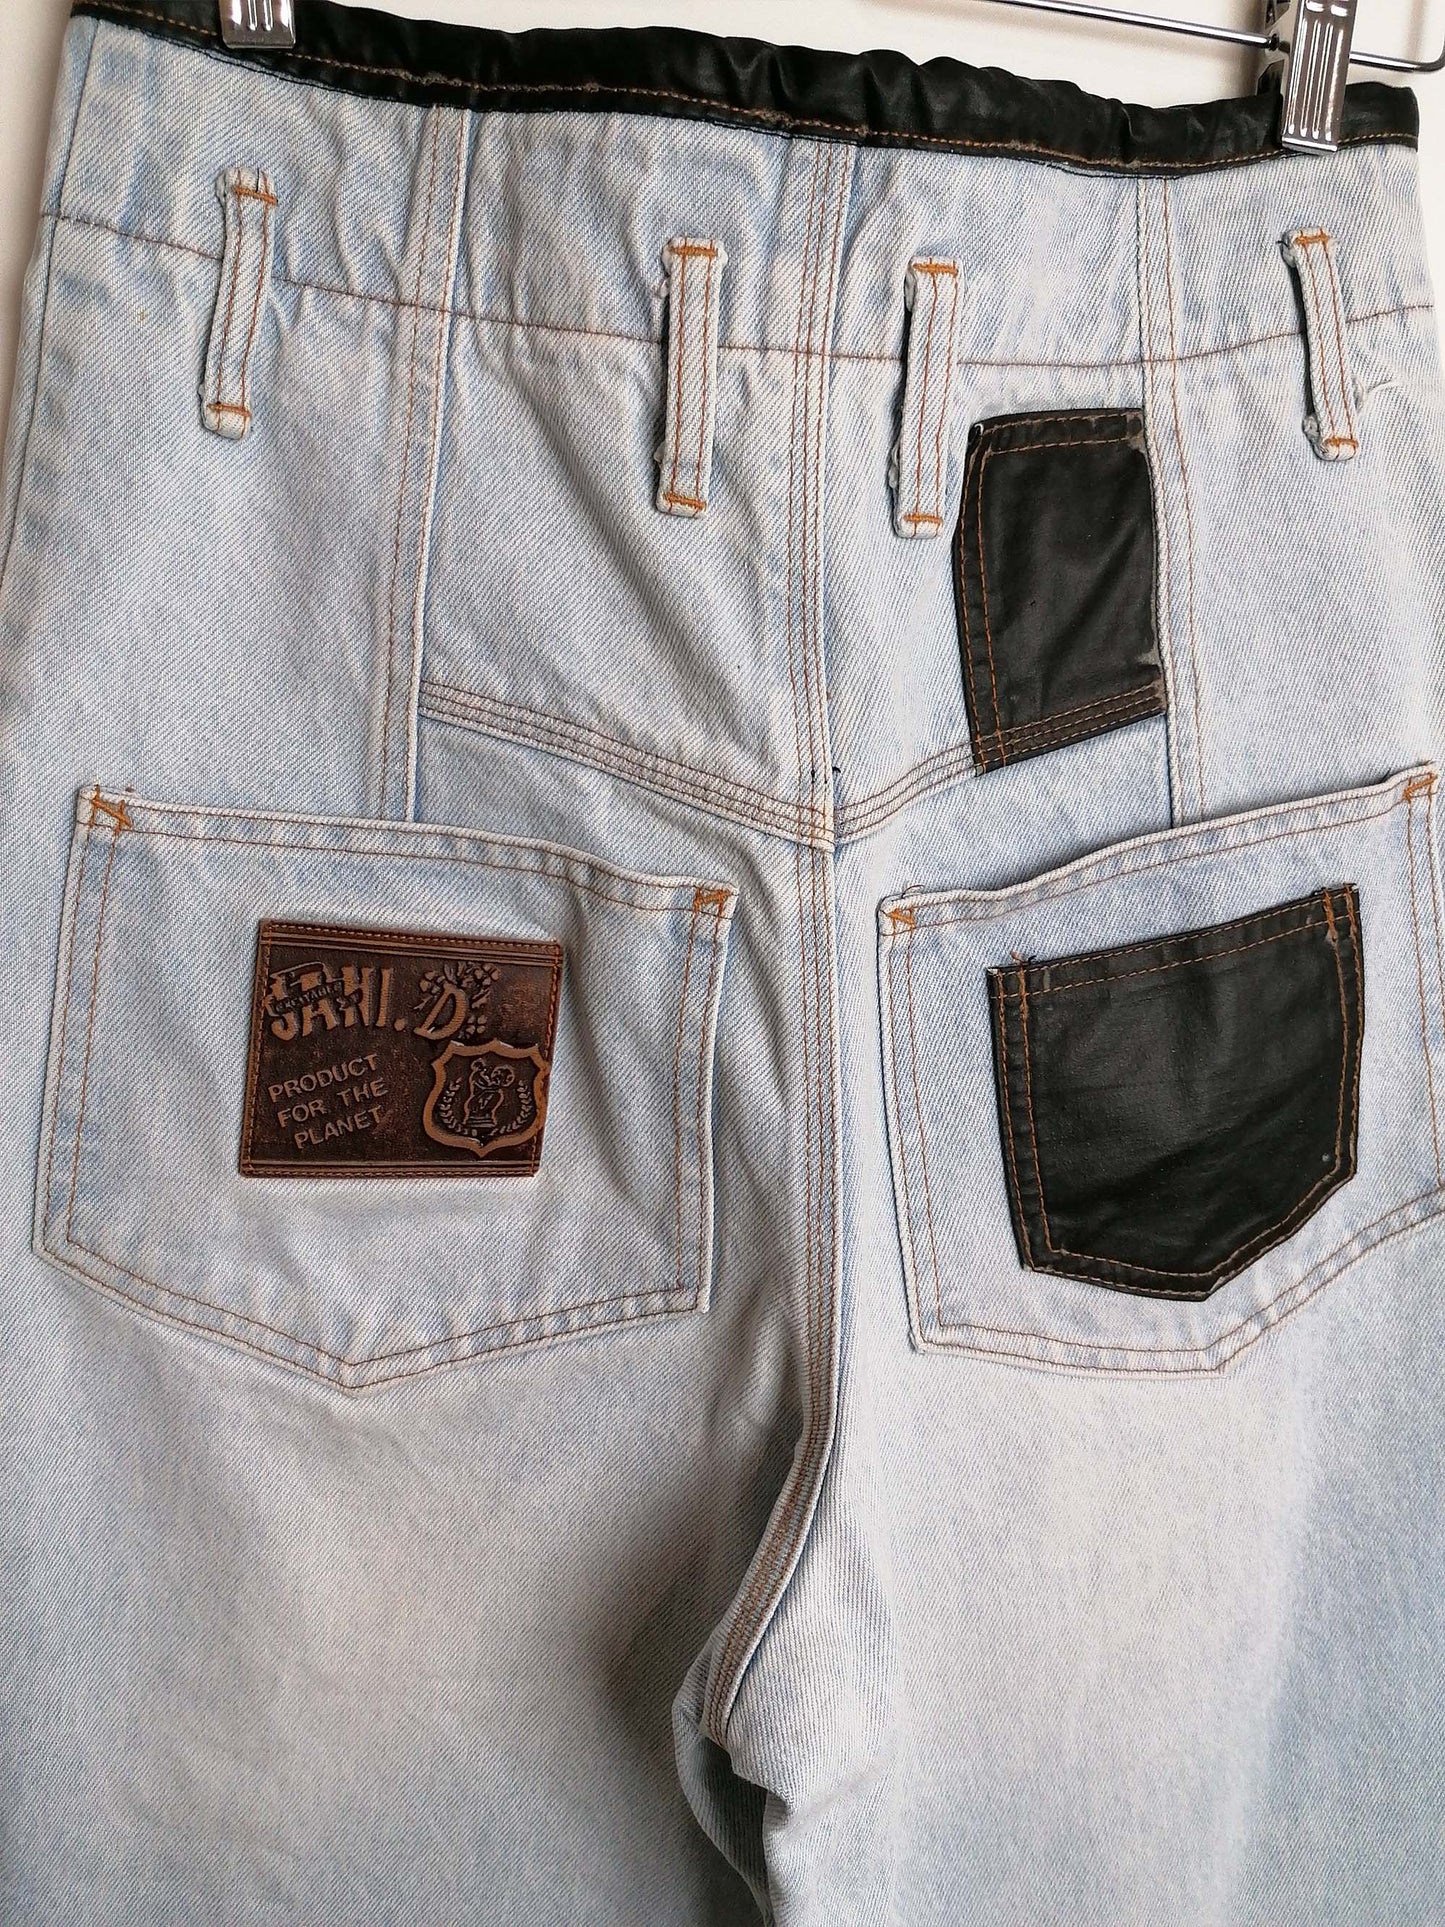 80's JANI. D Super High Waist Baggy Jeans - size S-M